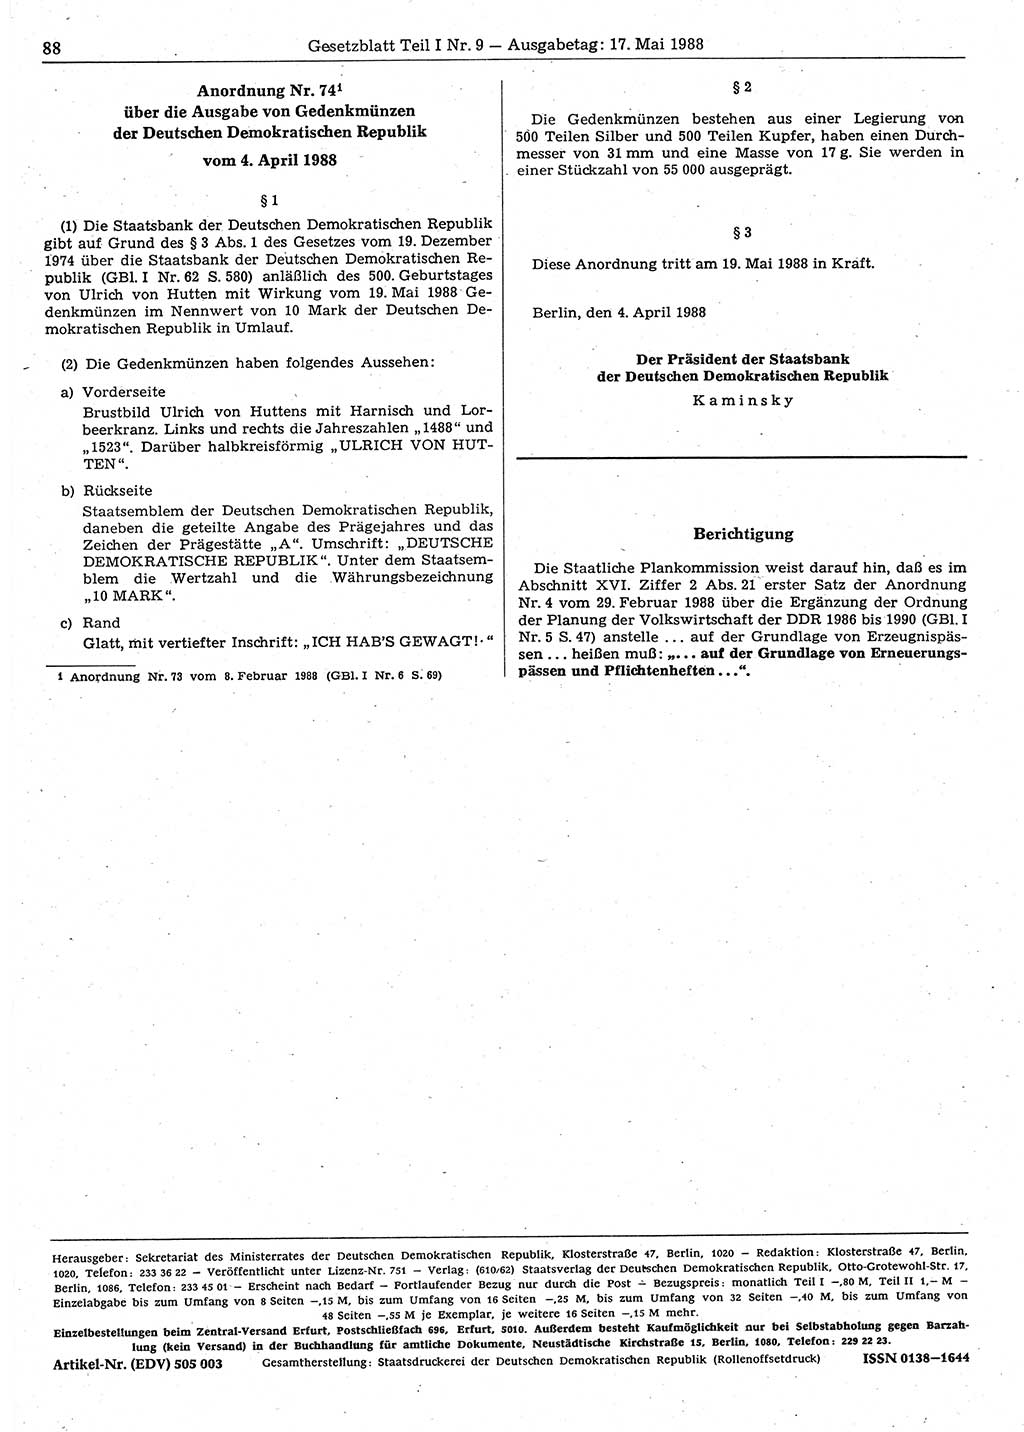 Gesetzblatt (GBl.) der Deutschen Demokratischen Republik (DDR) Teil Ⅰ 1988, Seite 88 (GBl. DDR Ⅰ 1988, S. 88)